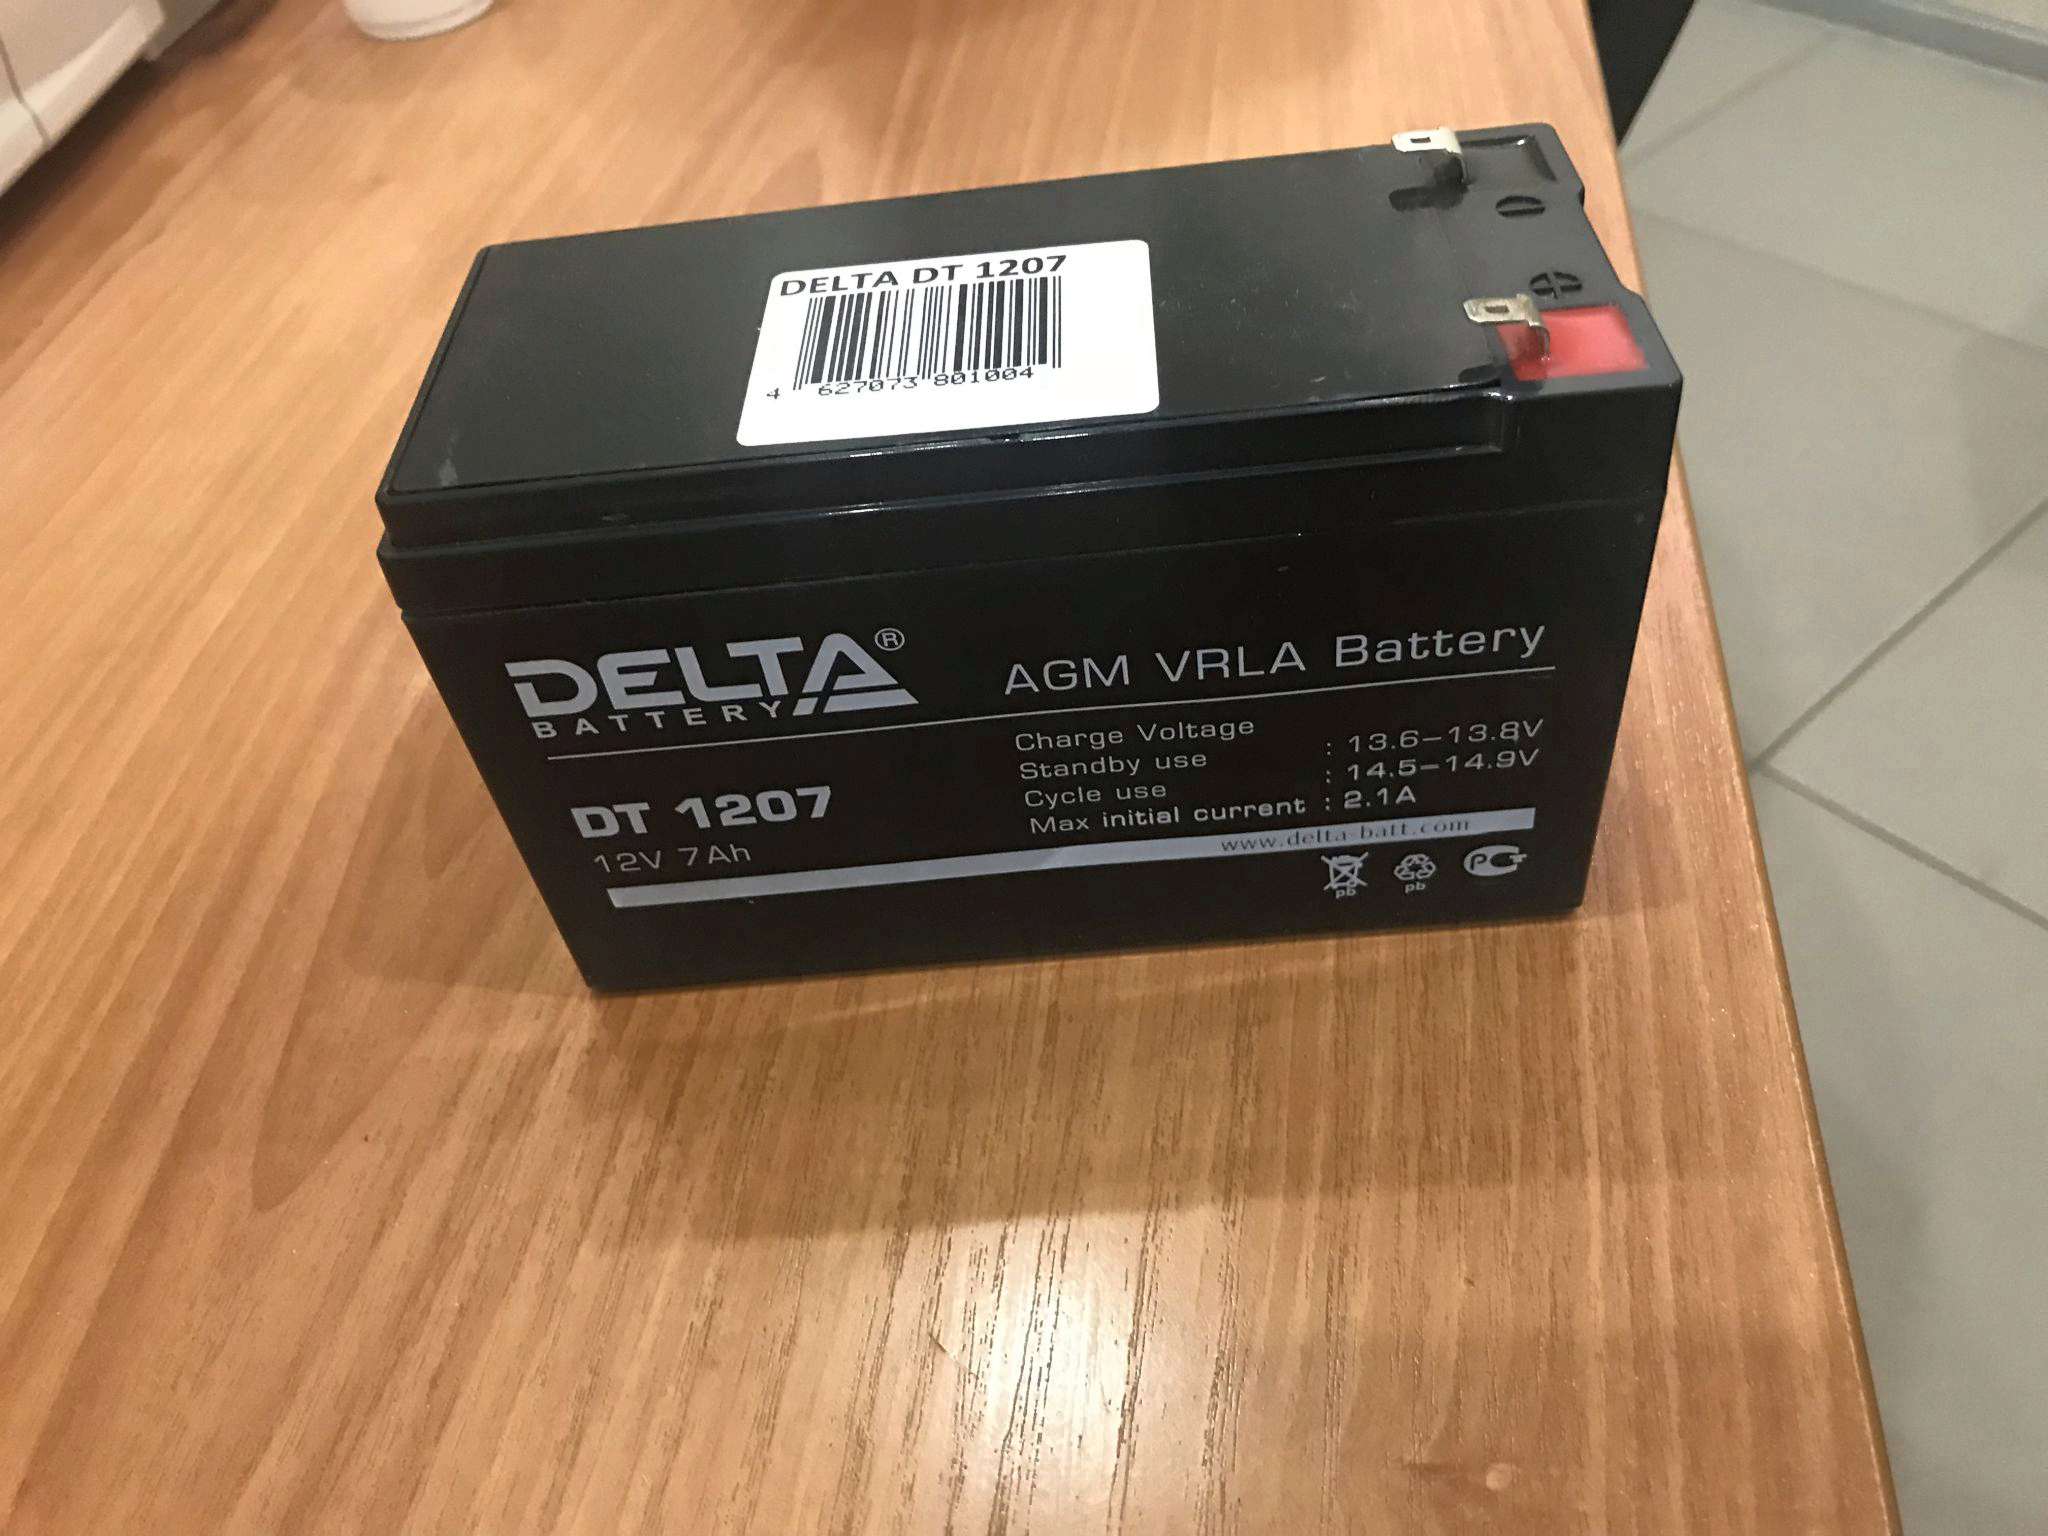 Аккумулятор 1207 12v 7ah. Аккумулятор Delta DT 1207. Delta Battery DT 1207. Батарея Delta DT 1207 12v7ah. Delta DT 1207 (12v / 7ah).